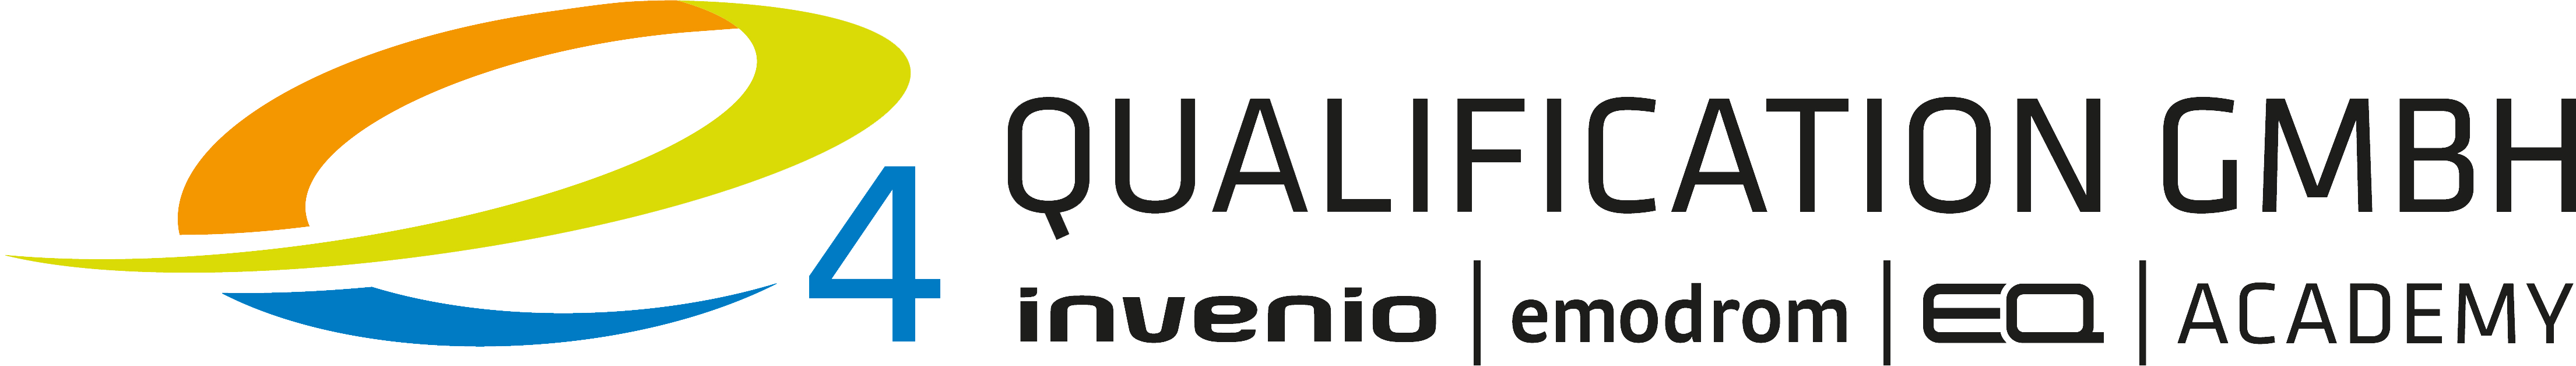 Logo der e4 QUALIFICATION und Partner der emodrom event + services